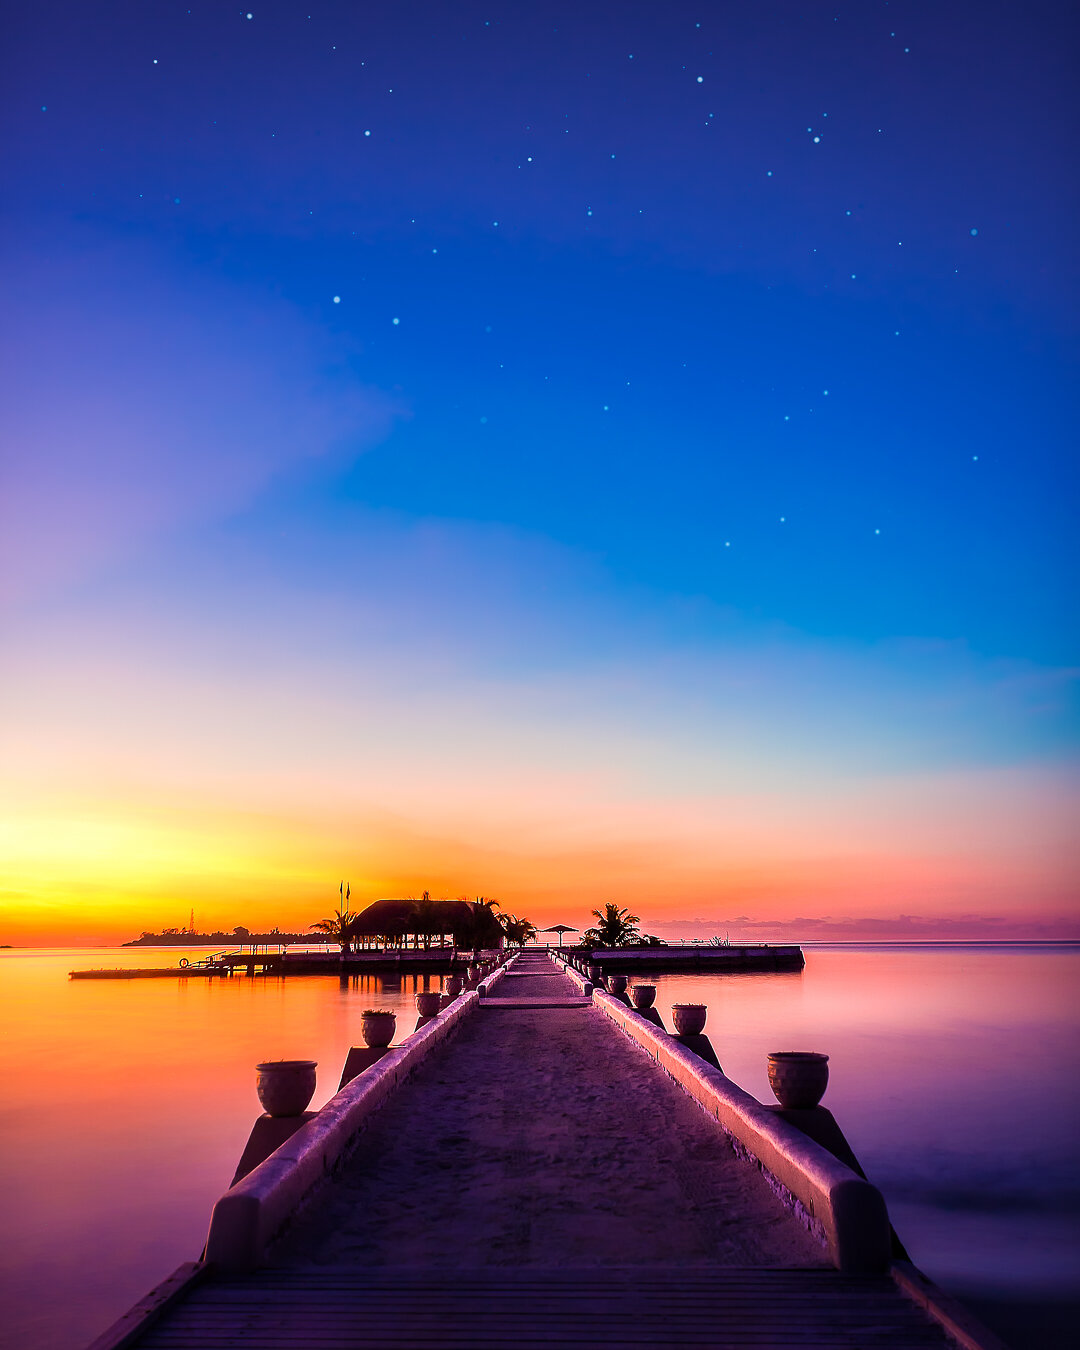 A Maldivian Sunset